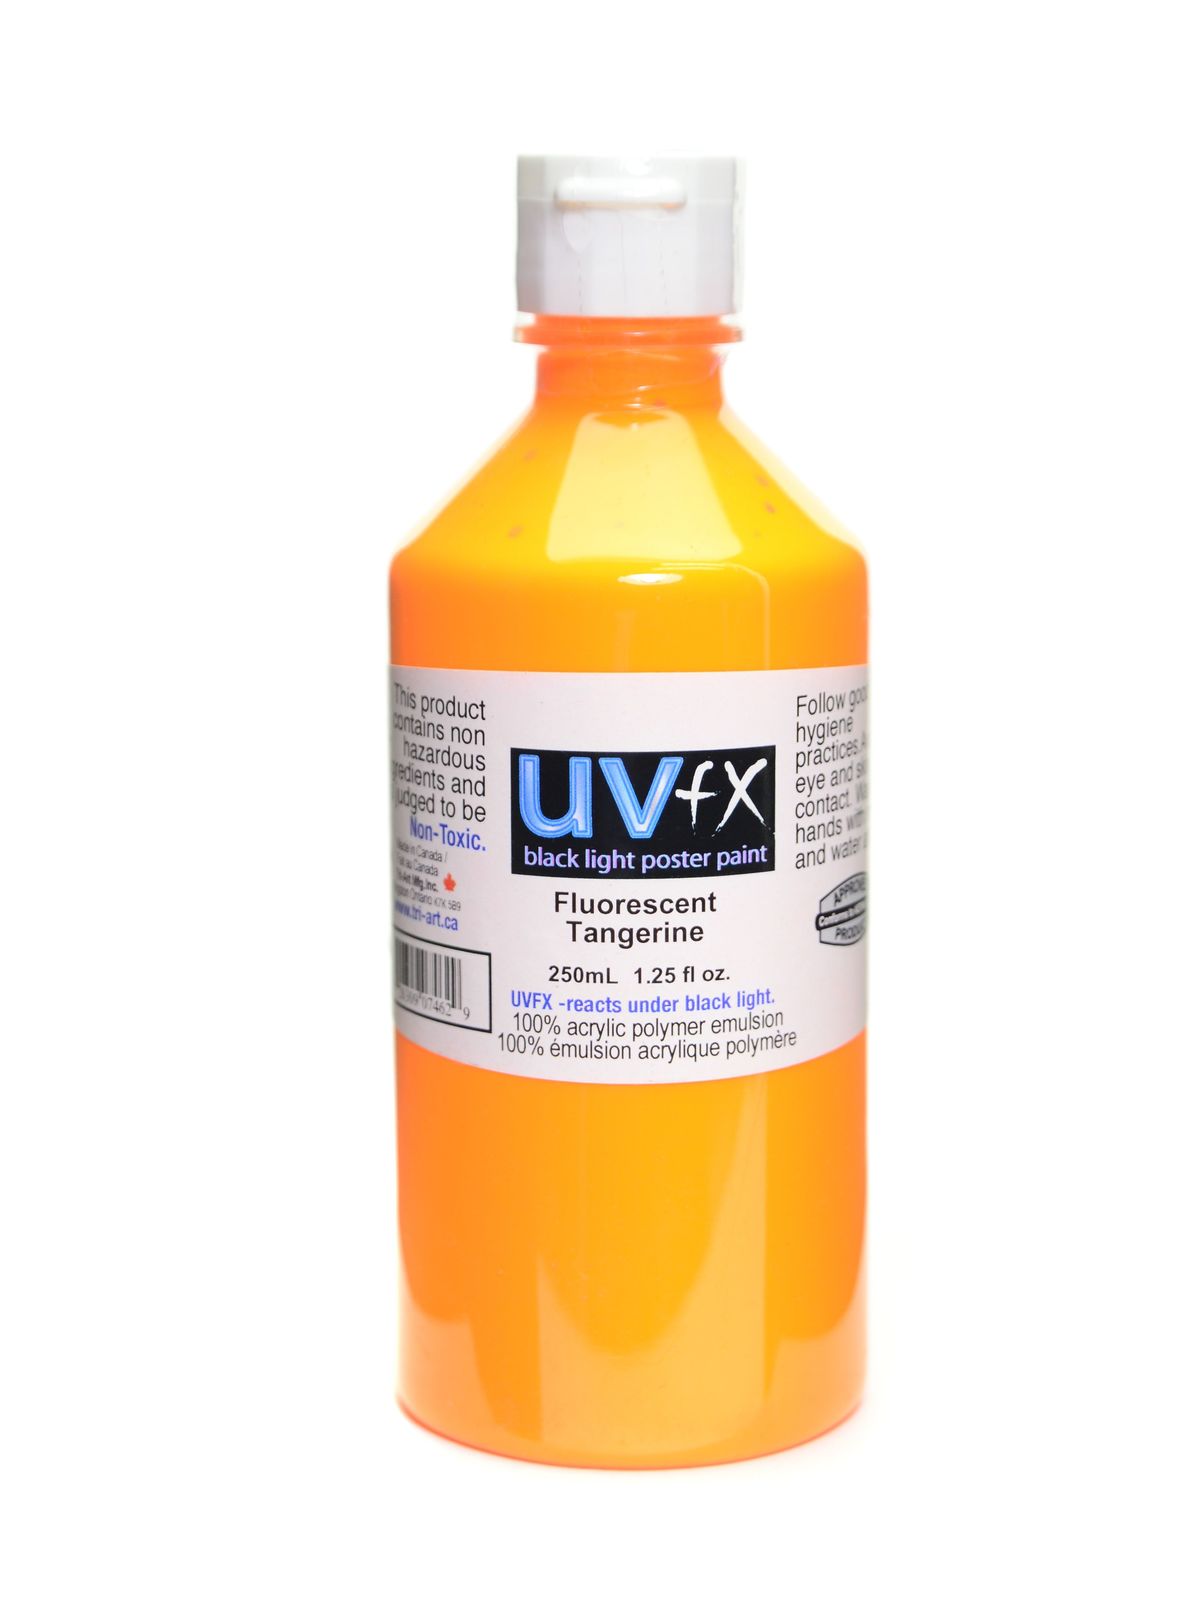 UVFX Black Light Poster Paint Fluorescent Tangerine 250 Ml Bottle